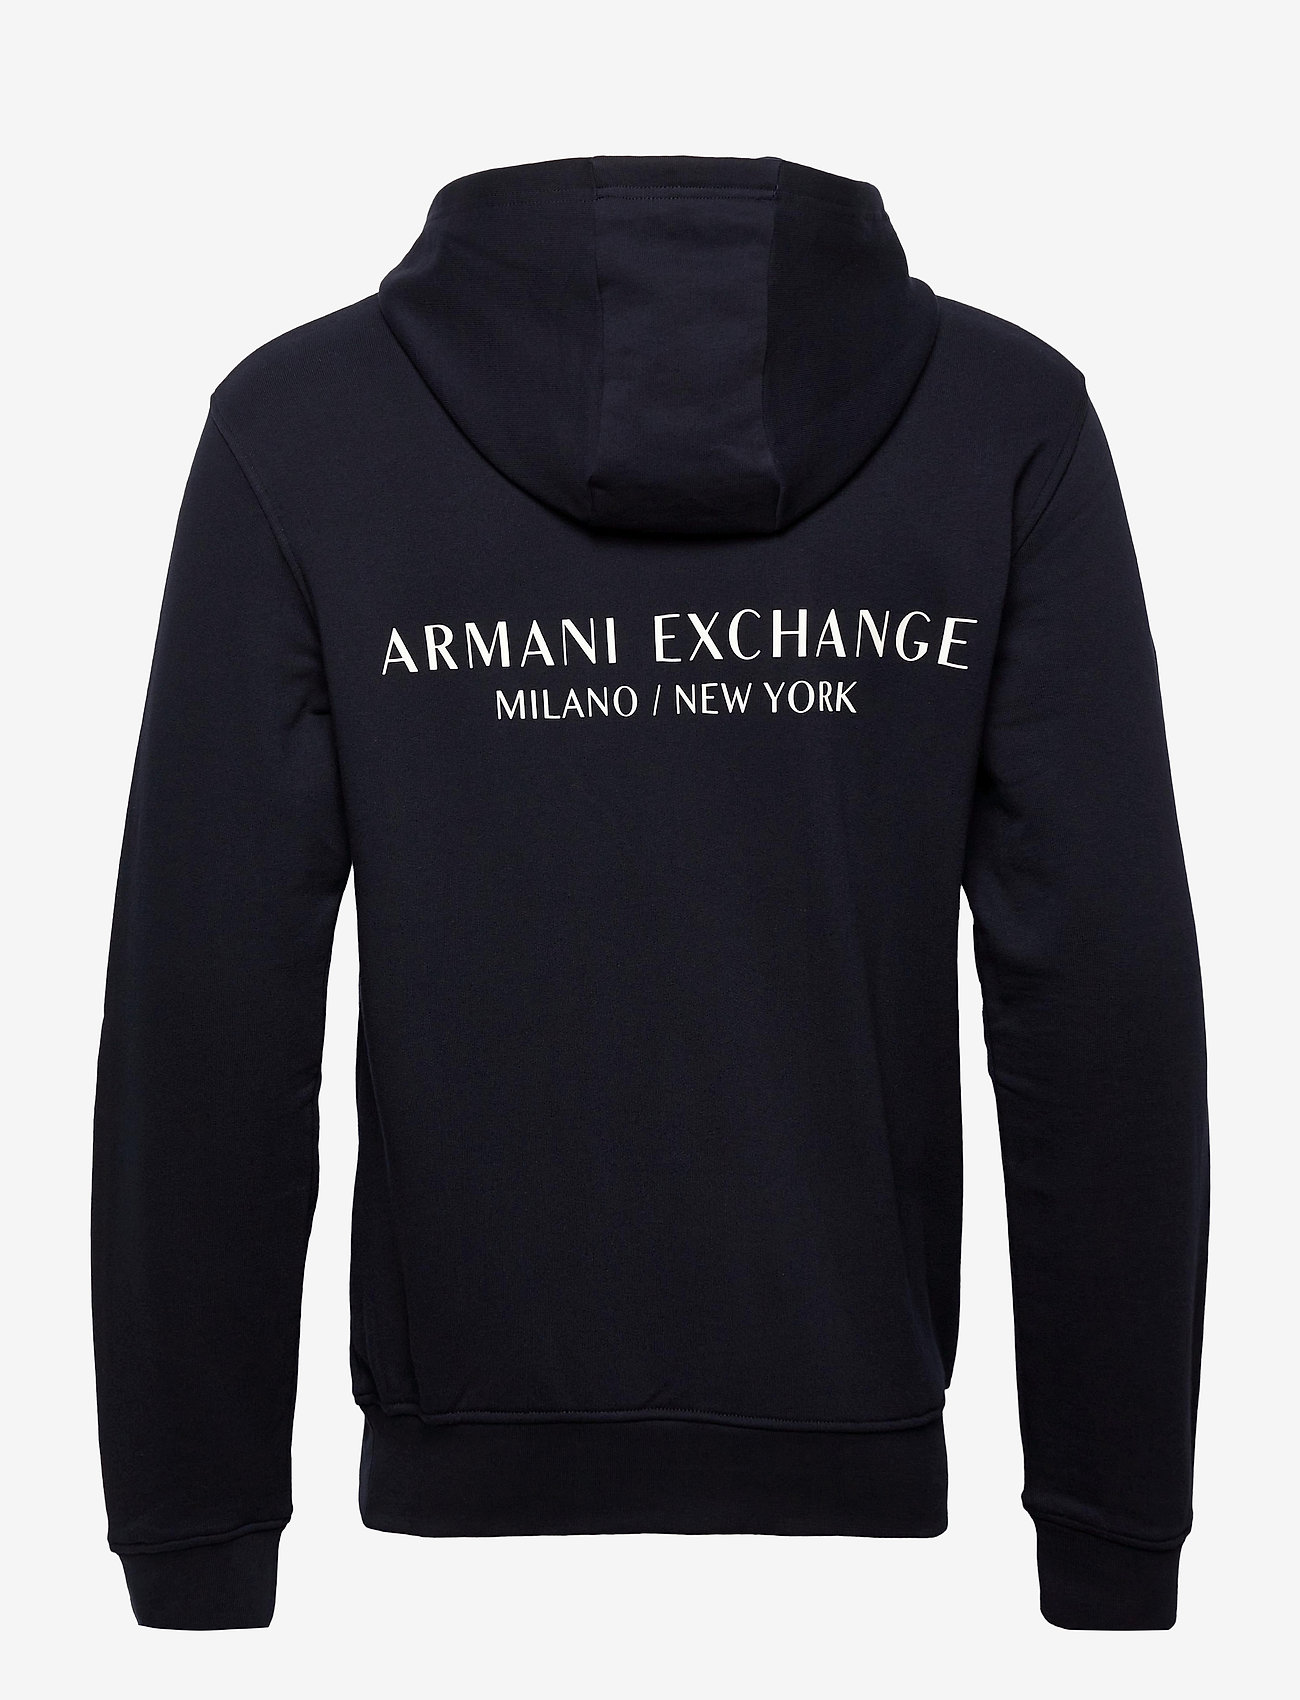 Armani Exchange - SWEATSHIRTS - bluzy z kapturem - navy - 1